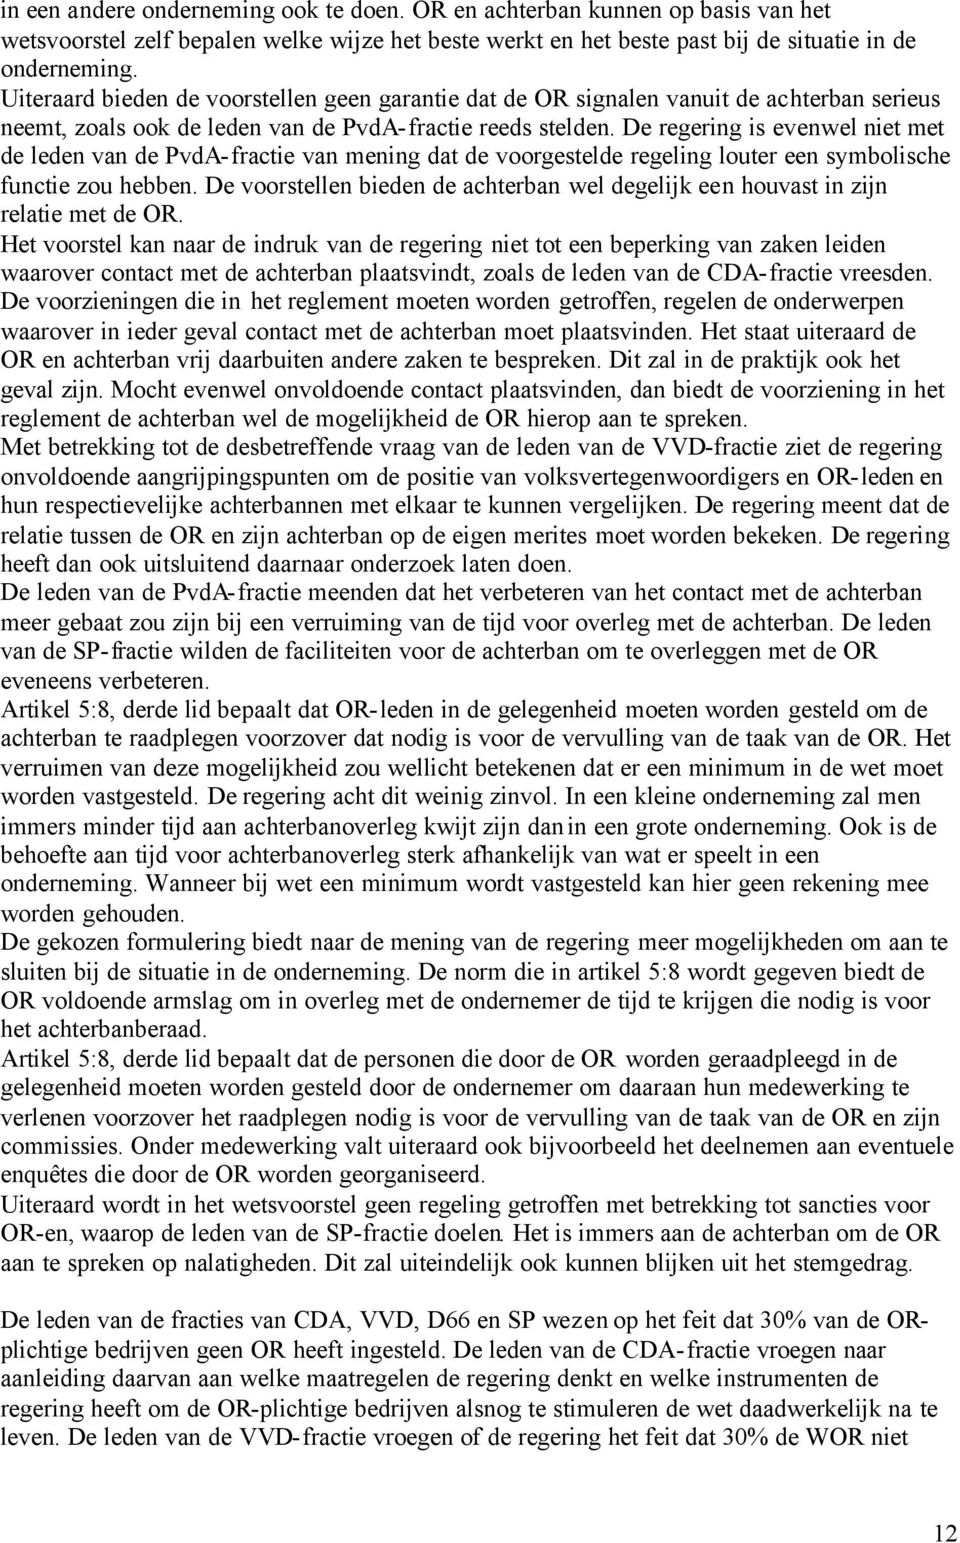 De regering is evenwel niet met de leden van de PvdA-fractie van mening dat de voorgestelde regeling louter een symbolische functie zou hebben.